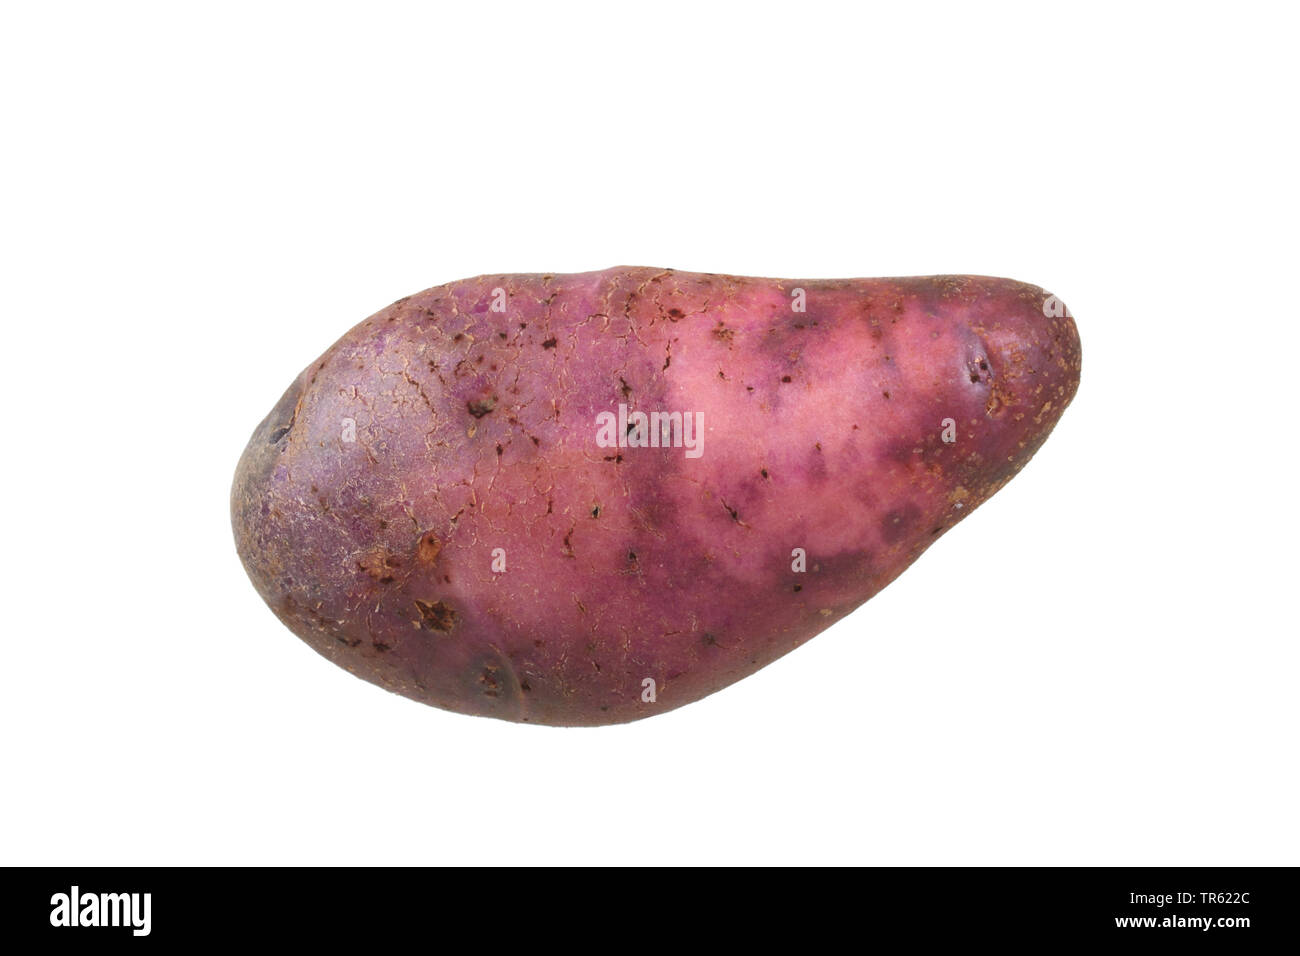 potato (Solanum tuberosum Purple Eyed Seedling), potato of cultivar Purple Eyed Seedling, cutout Stock Photo